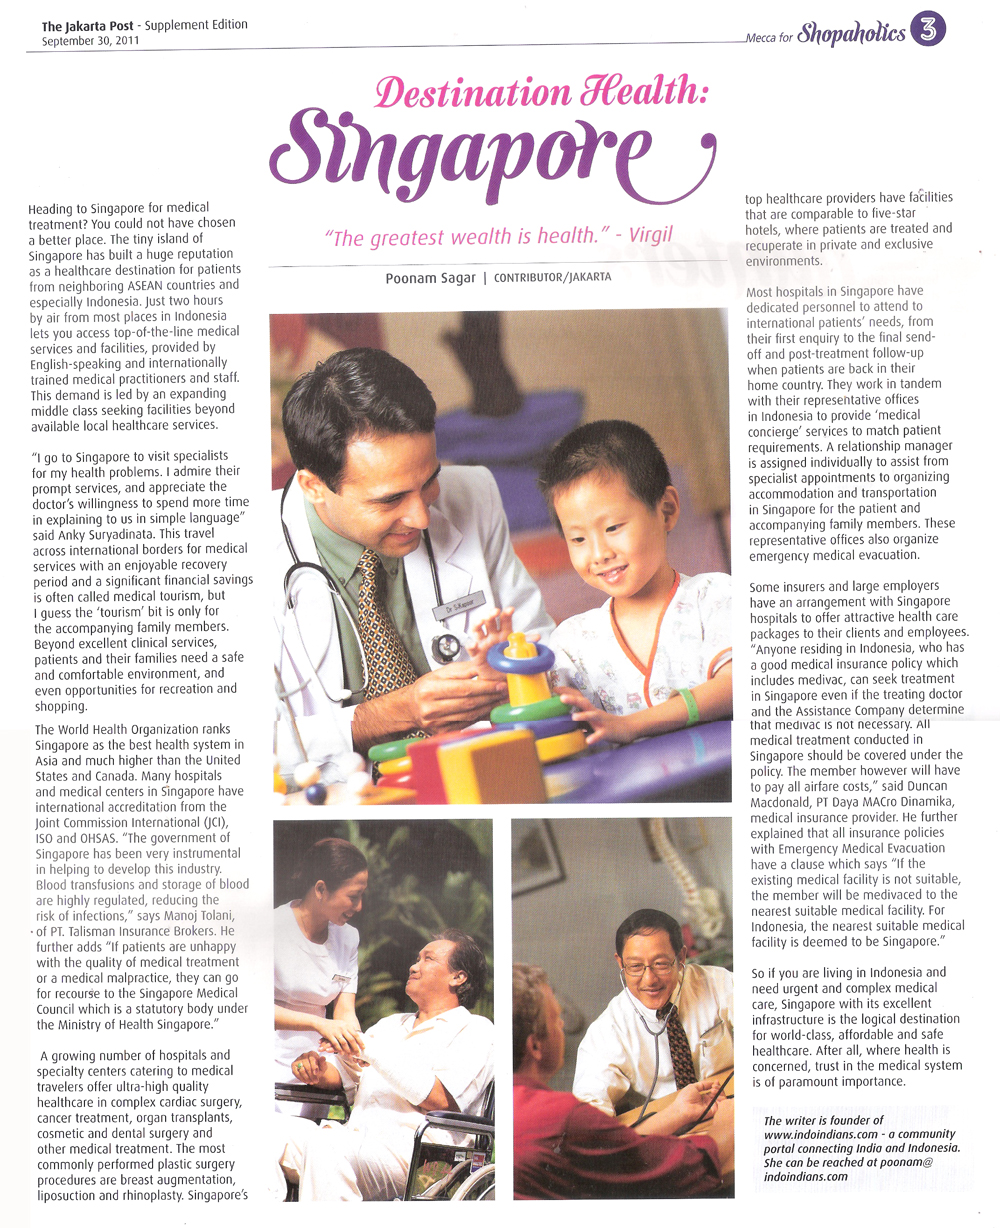 Destination Health: Singapore